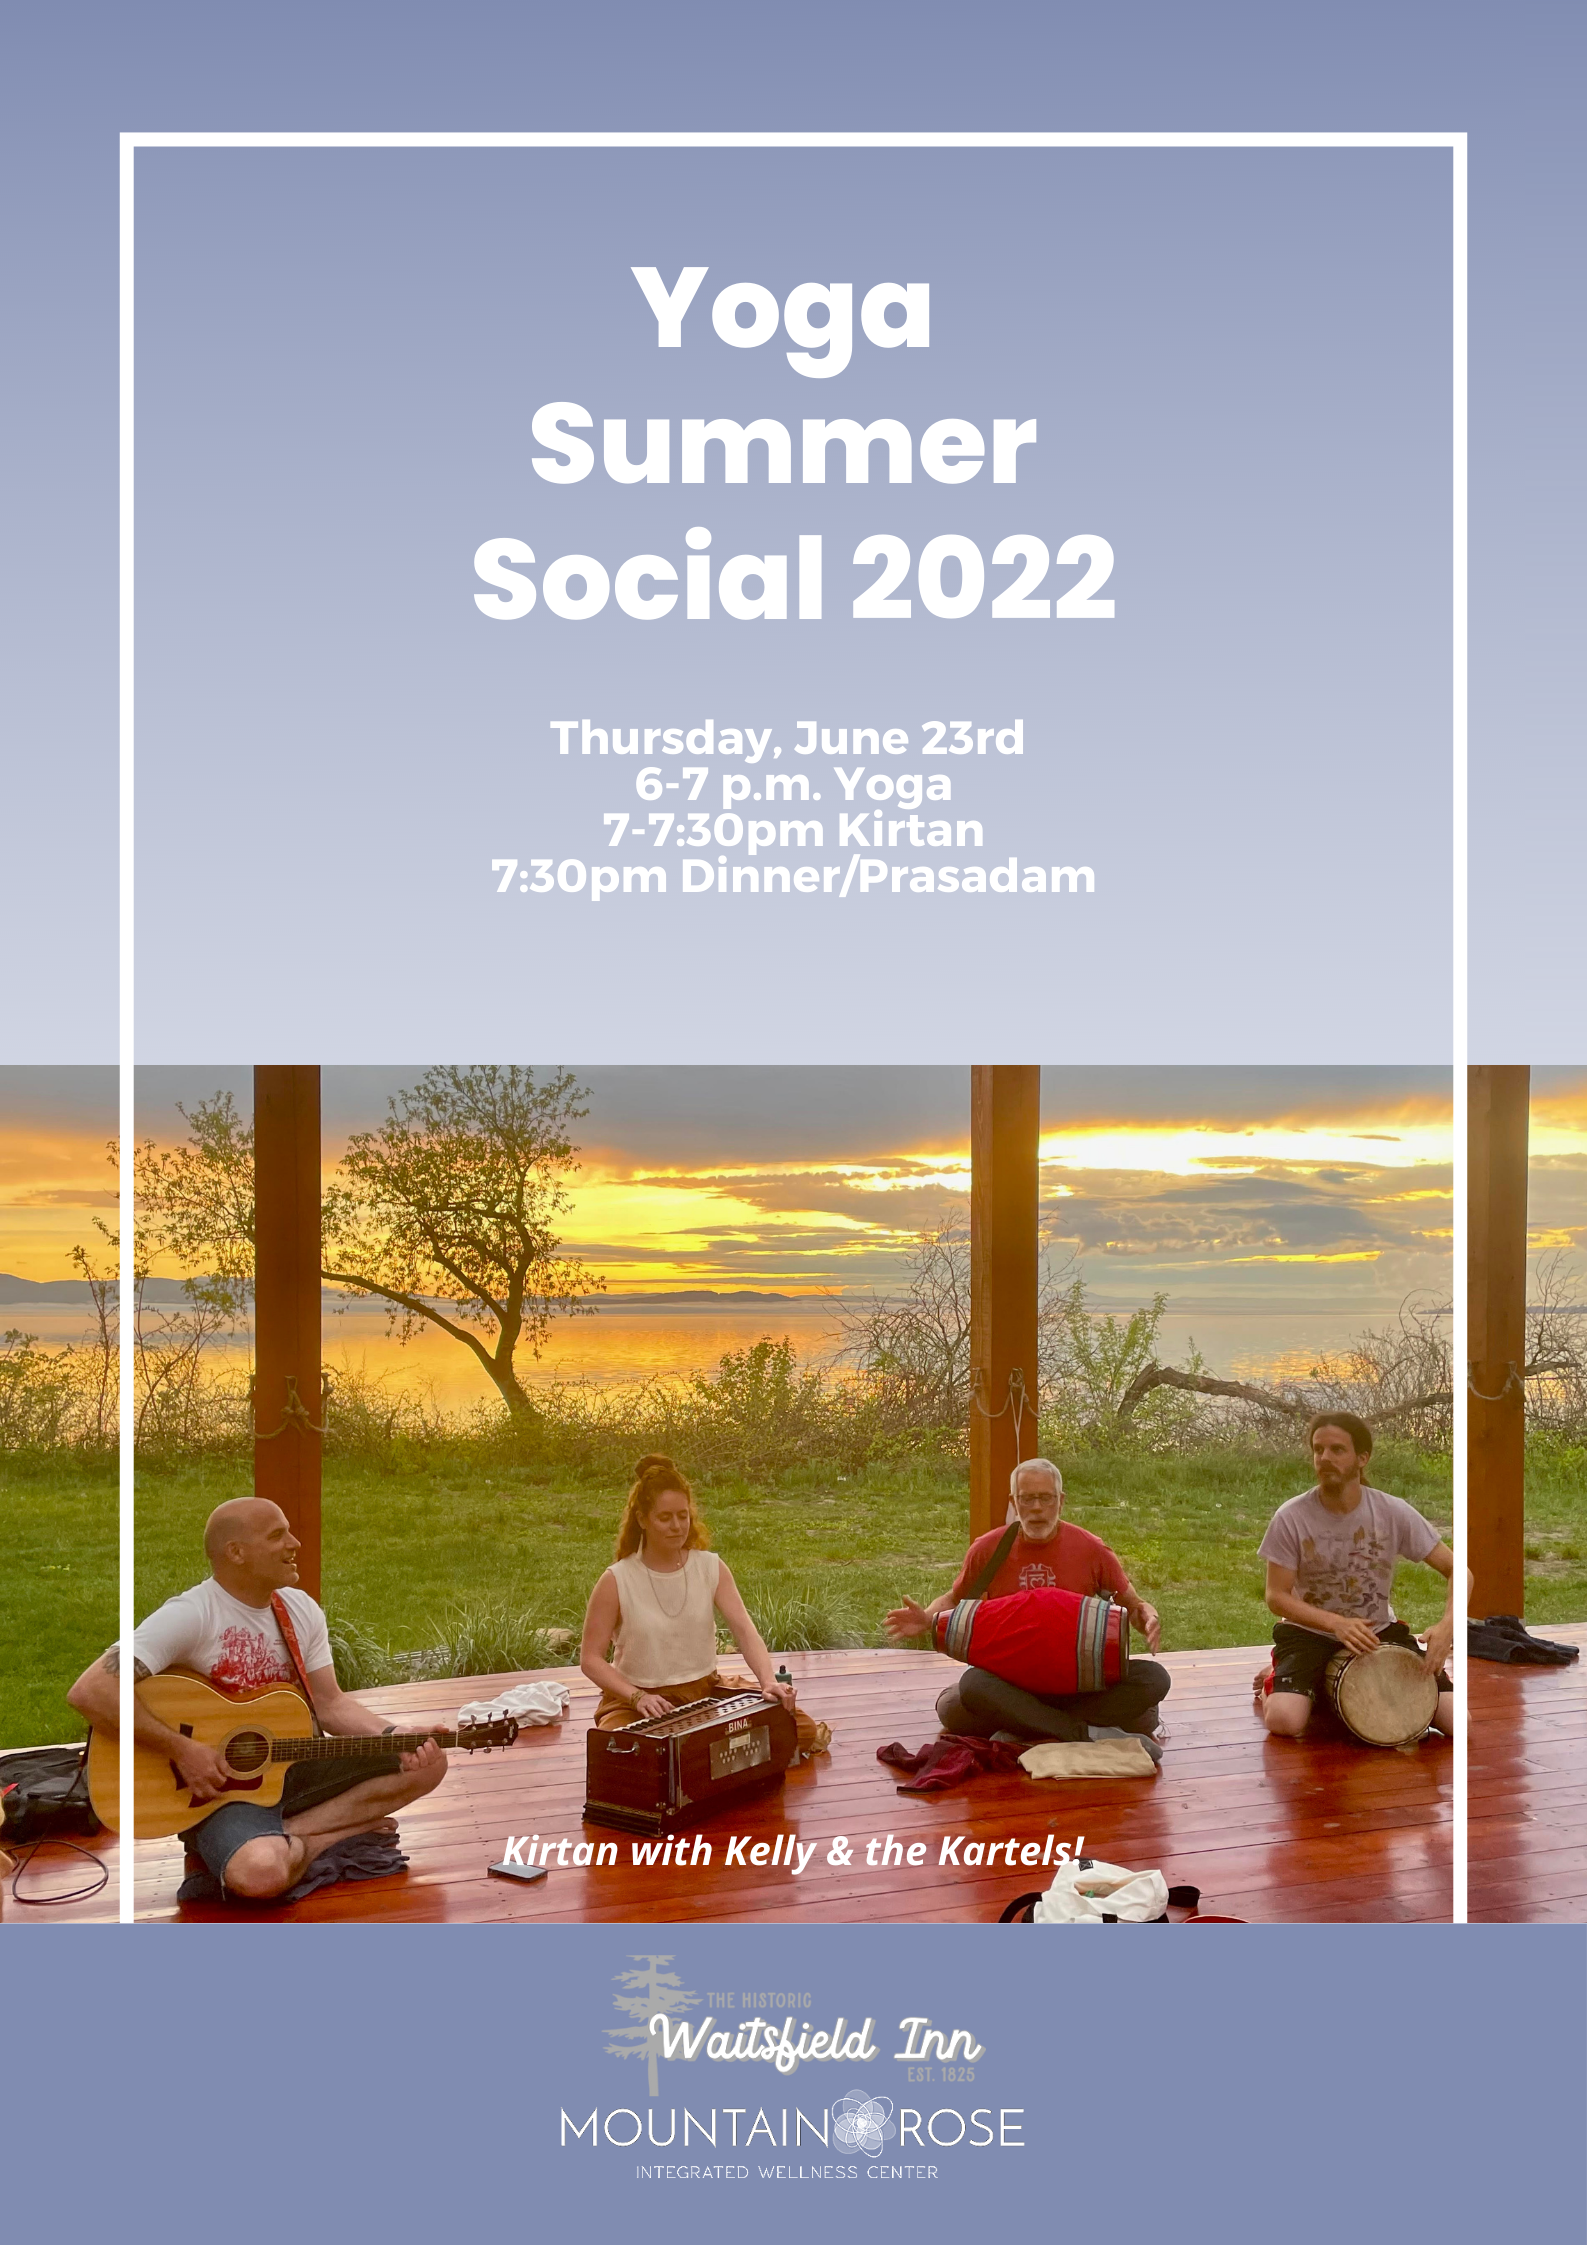 Yoga Summer Social 2022